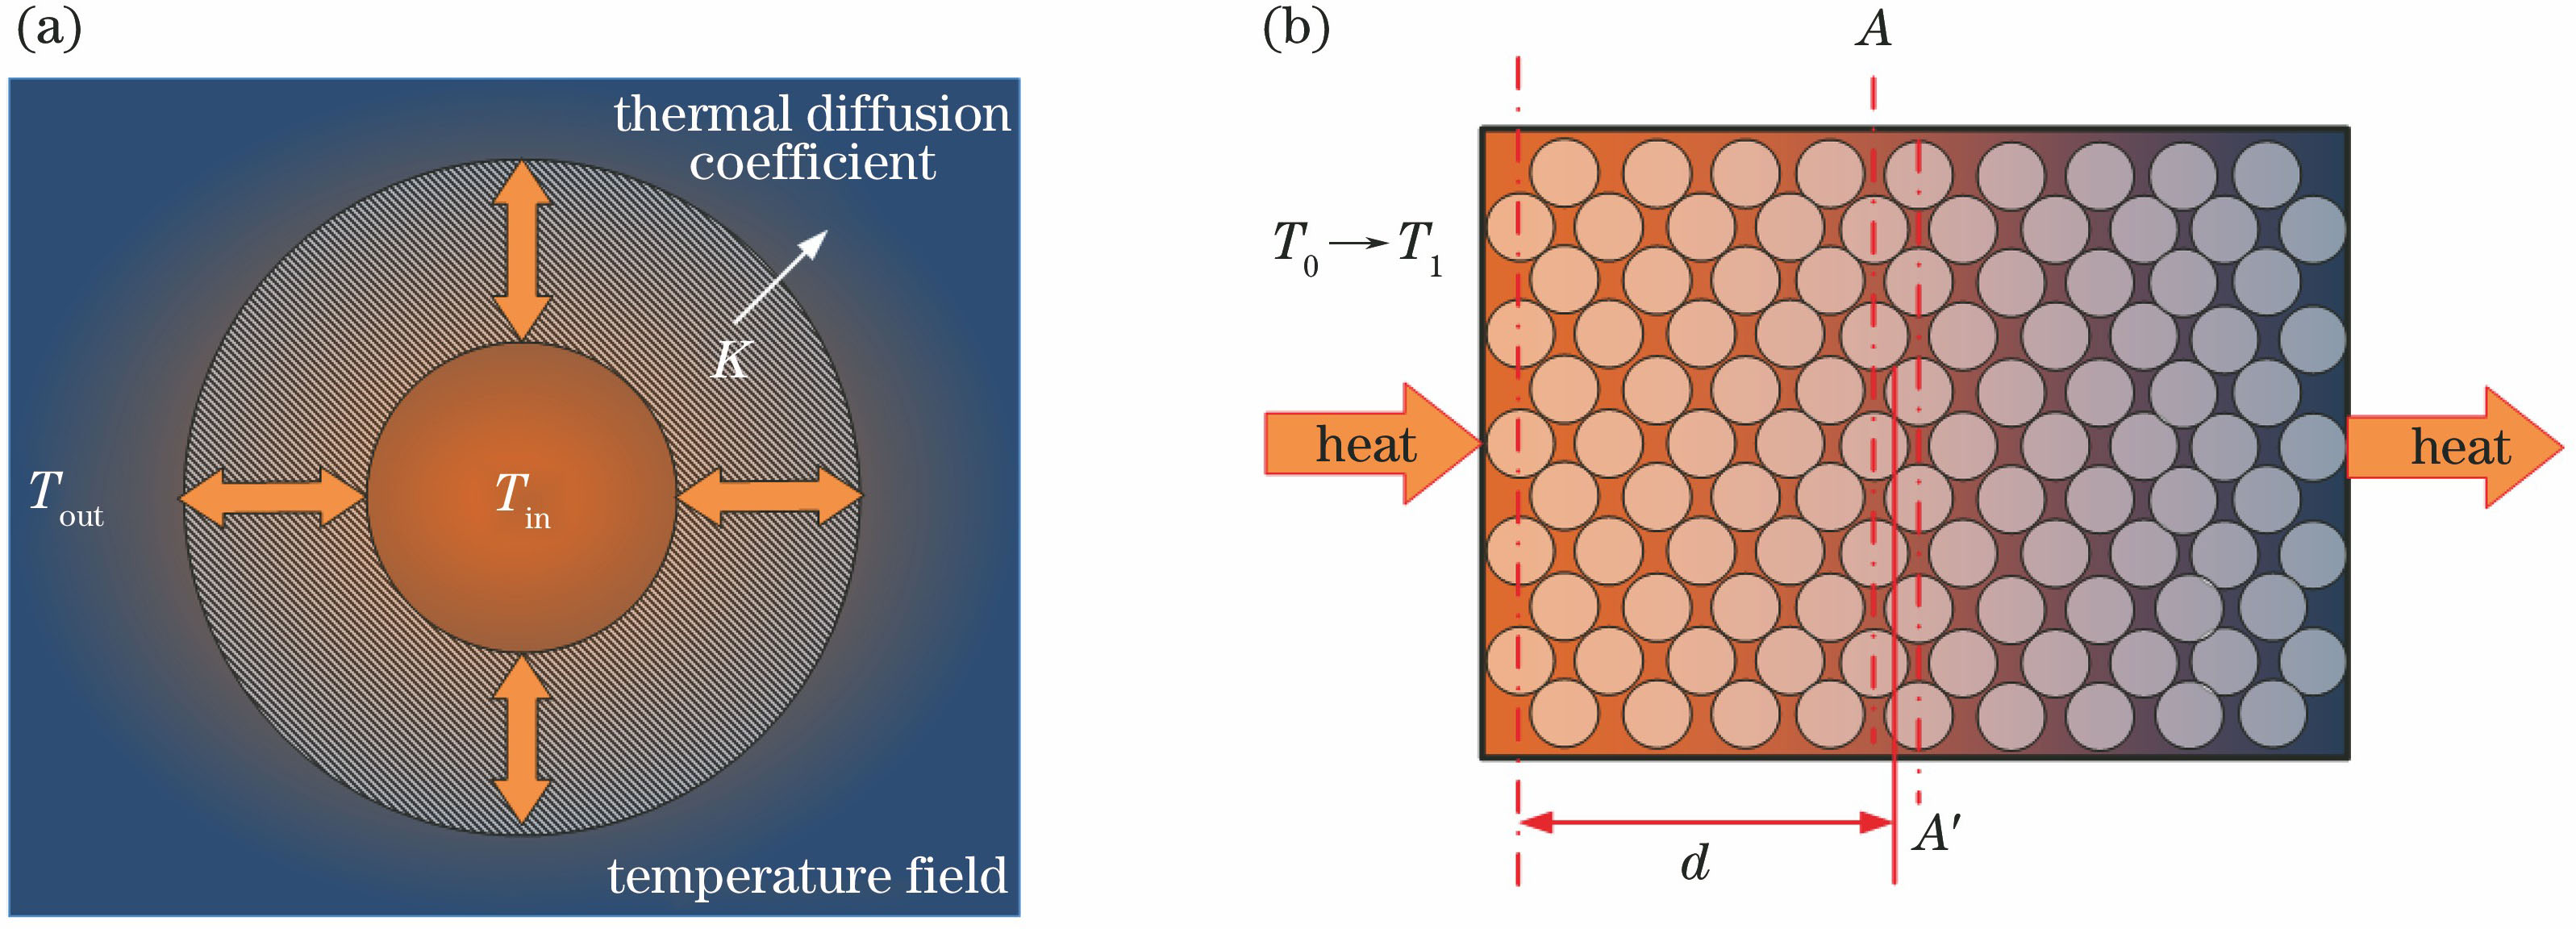 Temperature distribution of fiber coil. (a) Overall distribution; (b) equivalent semi-infinite thermal diffusion model